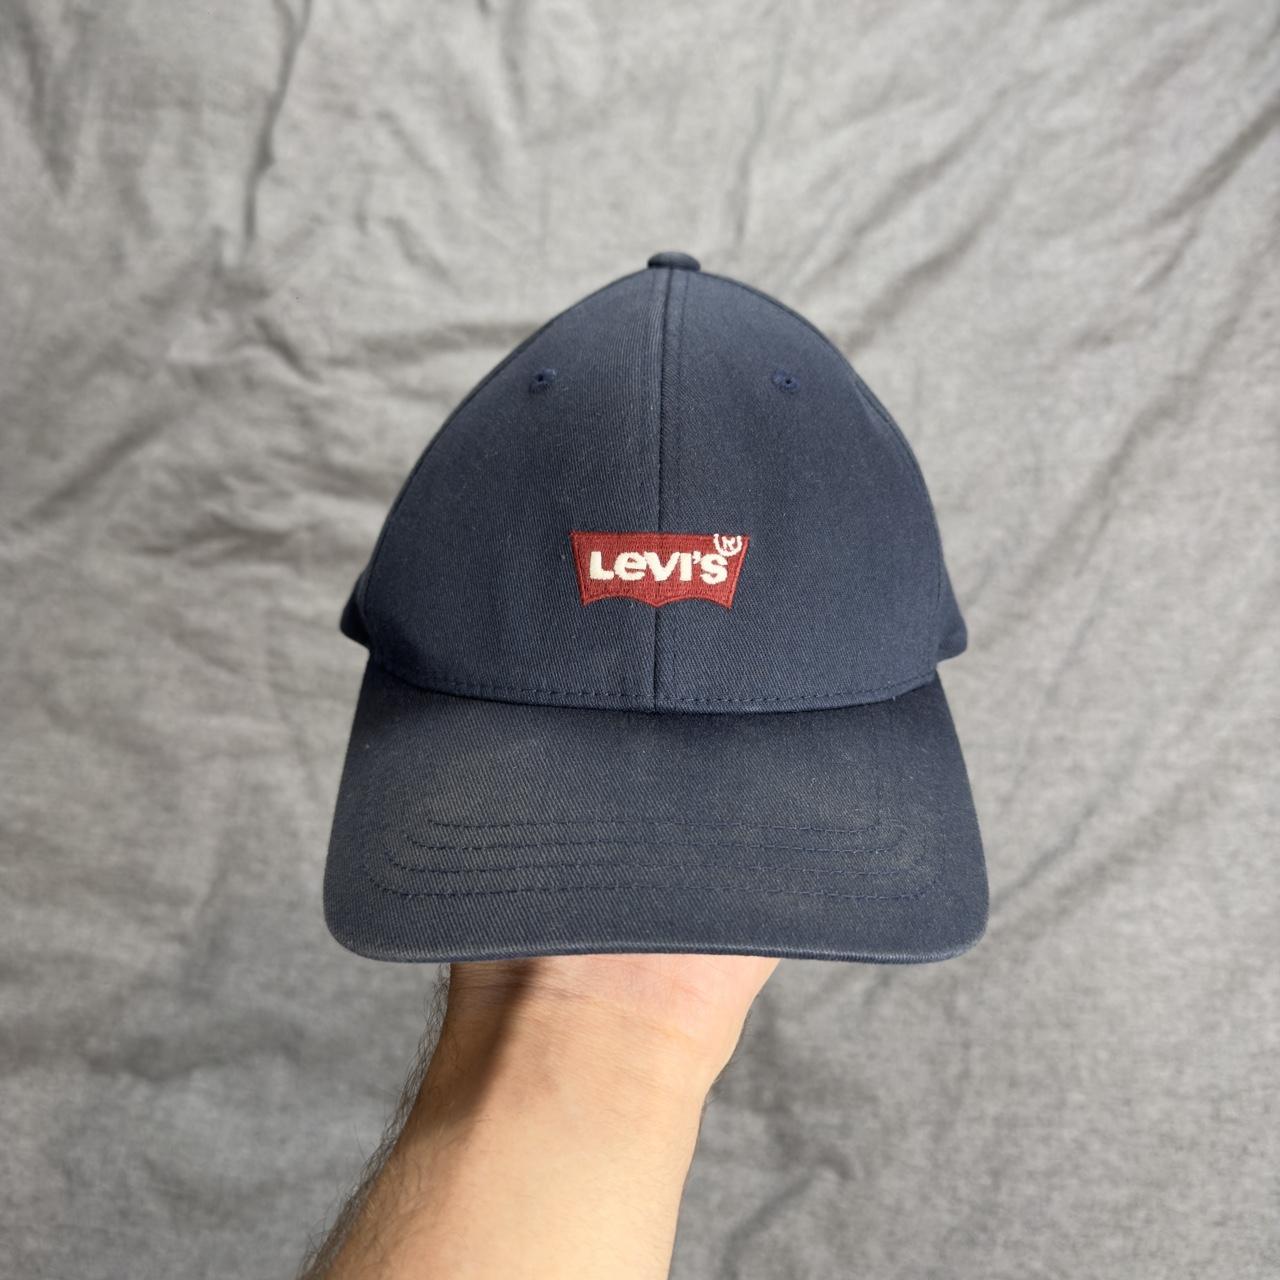 Levi’s Cap. Free nationwide shipment. - Depop